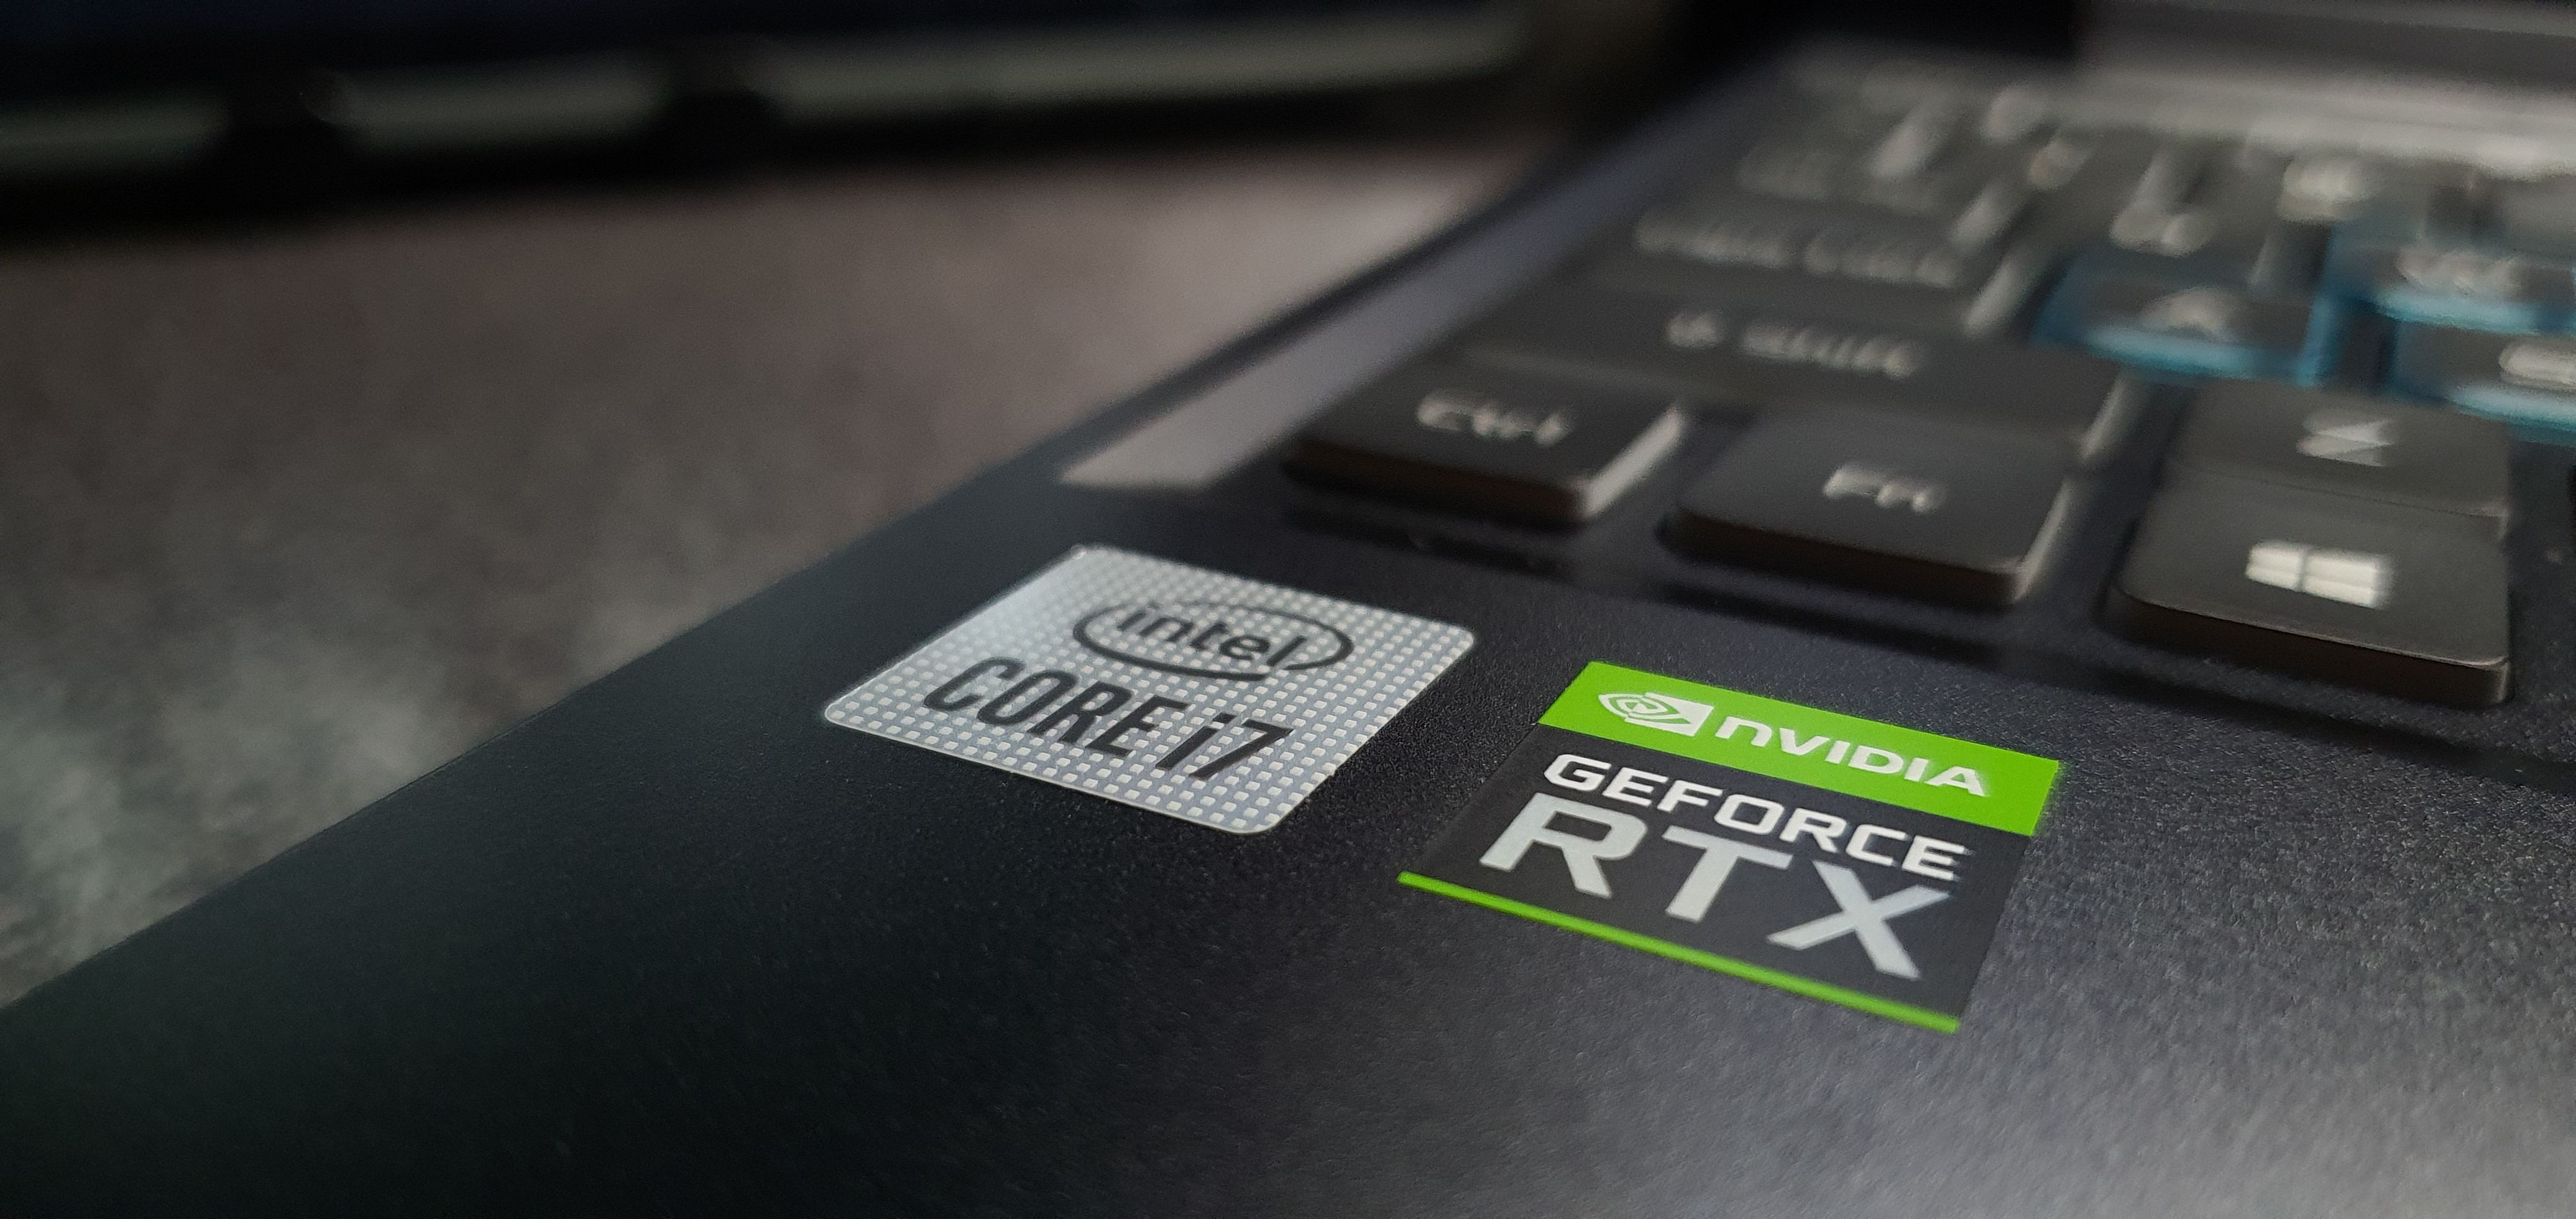 intel core i7 and nvidia RTX sticker on a laptop - Queste sono le 9 specifiche vitali da verificare prima di acquistare un laptop per la scuola